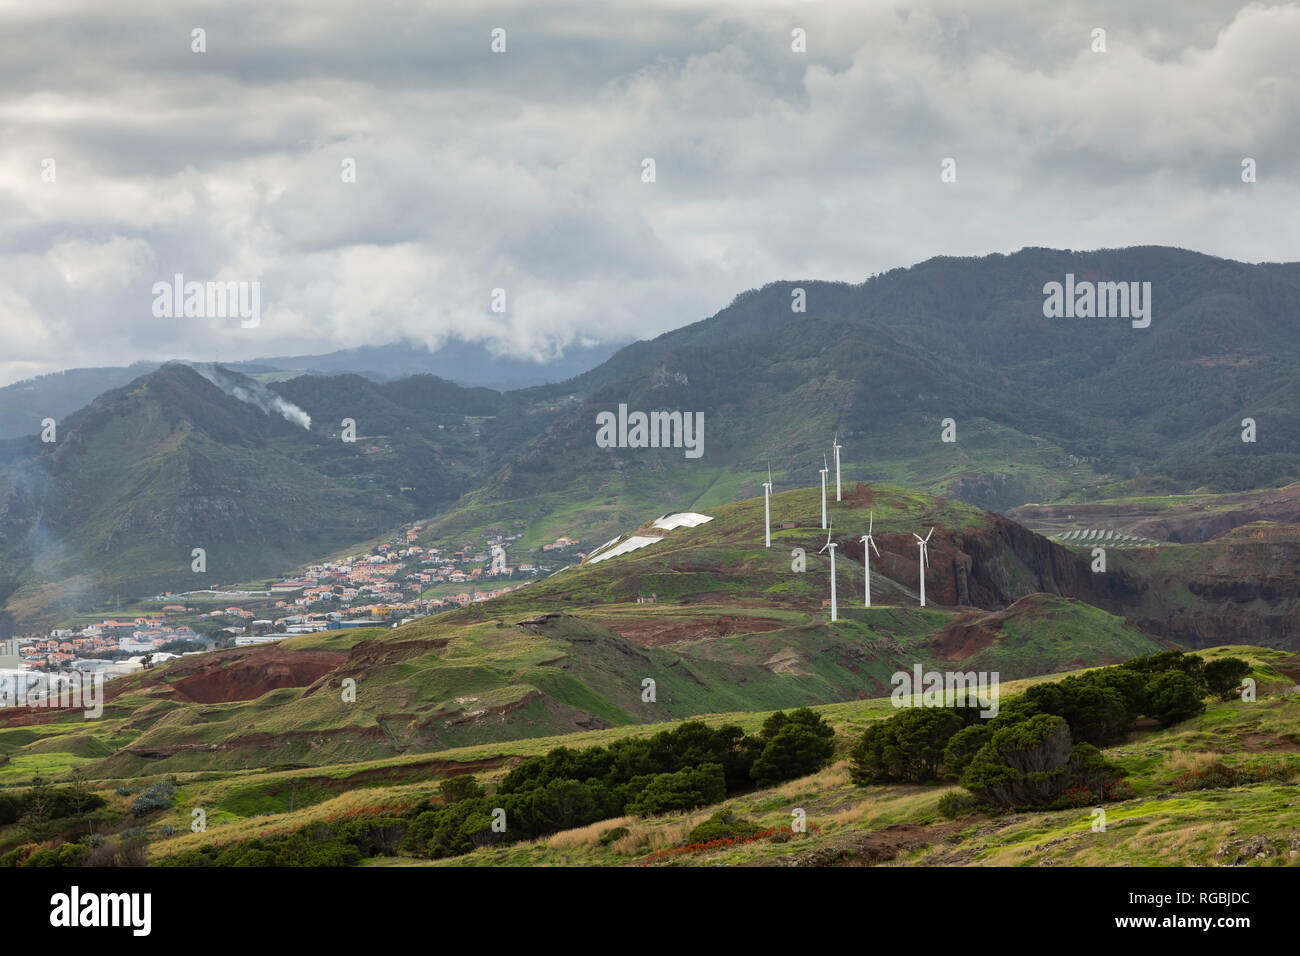 Una imagen tomada de un parque eólico de la zona volcánica de la Ponta do Rosto en la zona oriental de la península de Madeira, Portugal. Foto de stock